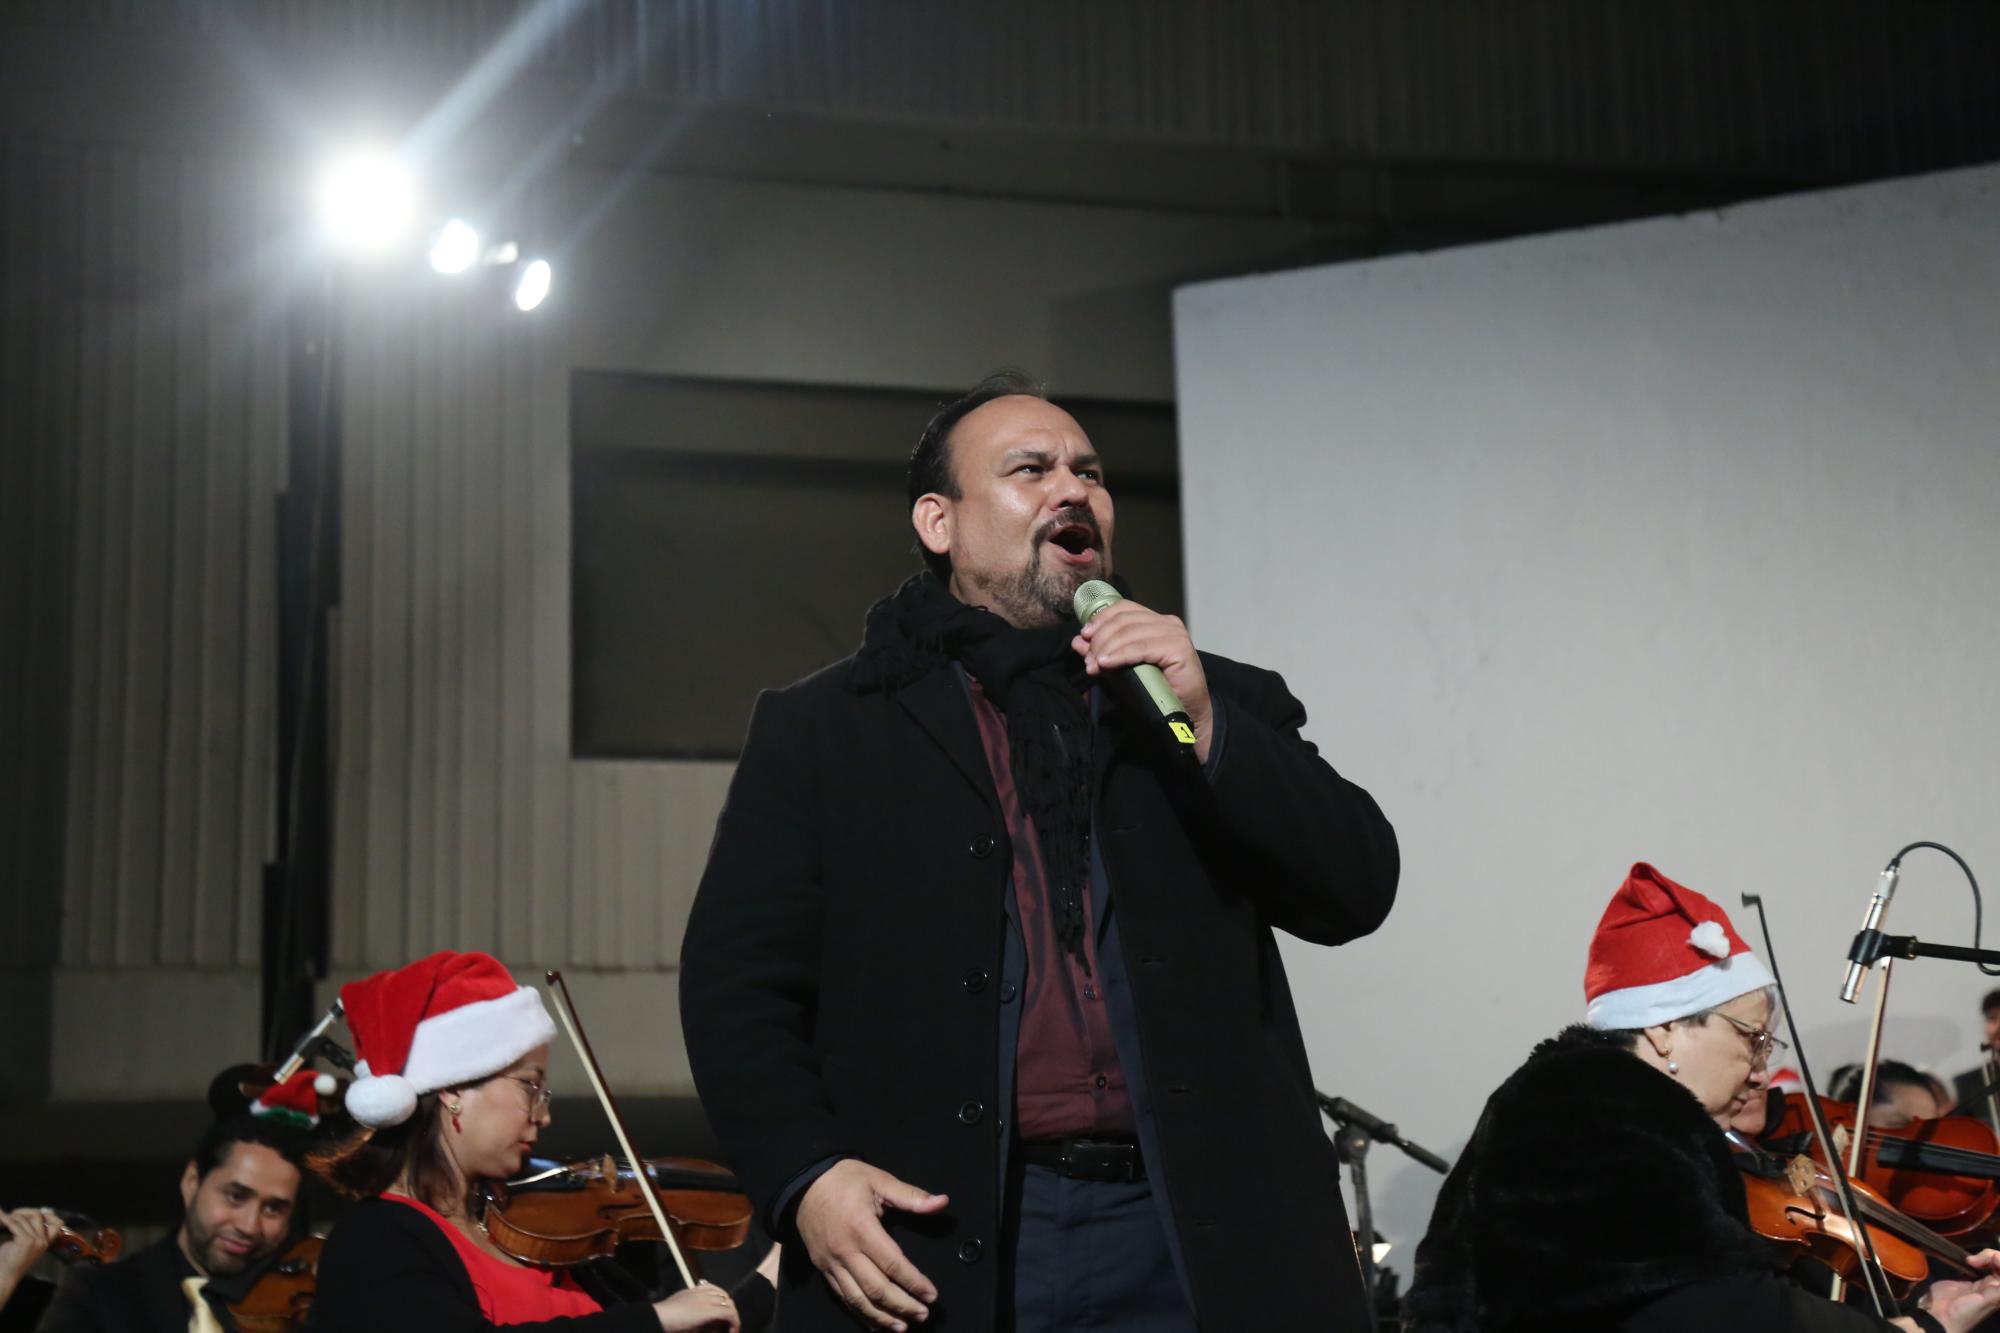 $!El tenor José Manuel Chu, director del Taller de Ópera de Sinaloa, se sumó al concierto como cantante.